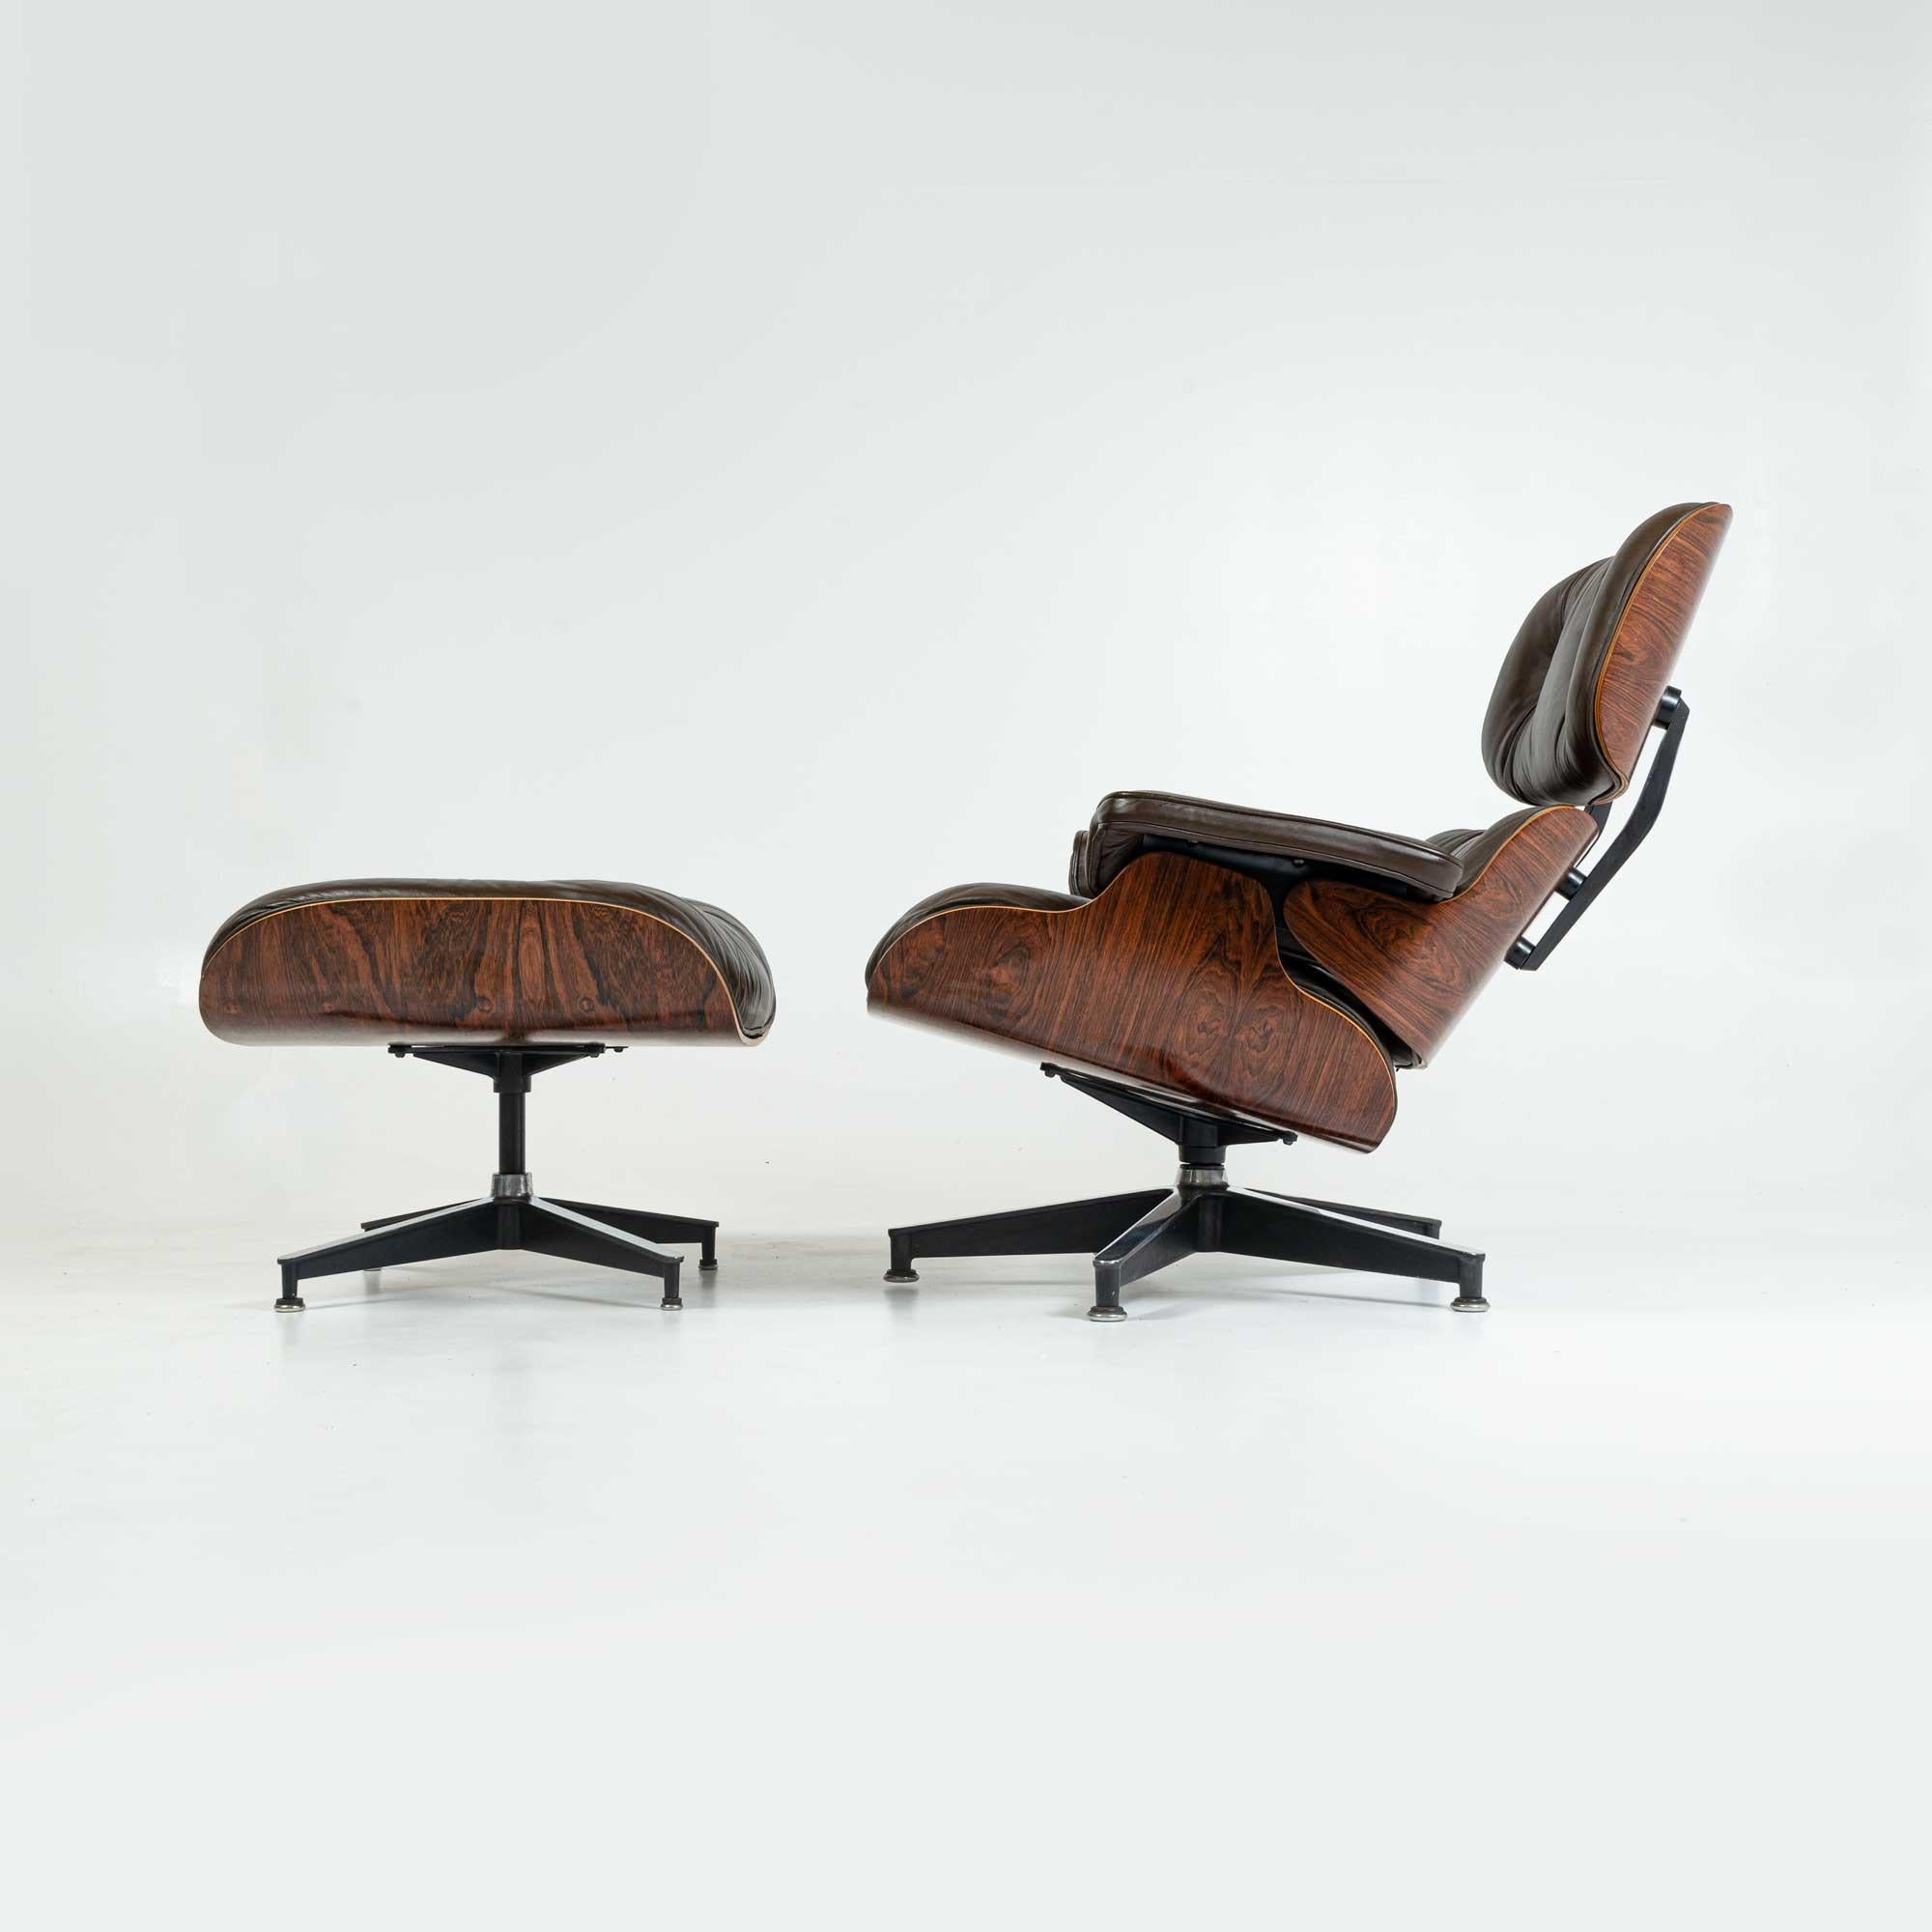 Chaise de salon Eames 3e génération entièrement restaurée, en bois de rose avec ottoman, avec coussins d'origine en cuir chocolat. La chaise a été restaurée et repeinte en laque. Les éléments du cadre métallique ont été repolis pour briller.